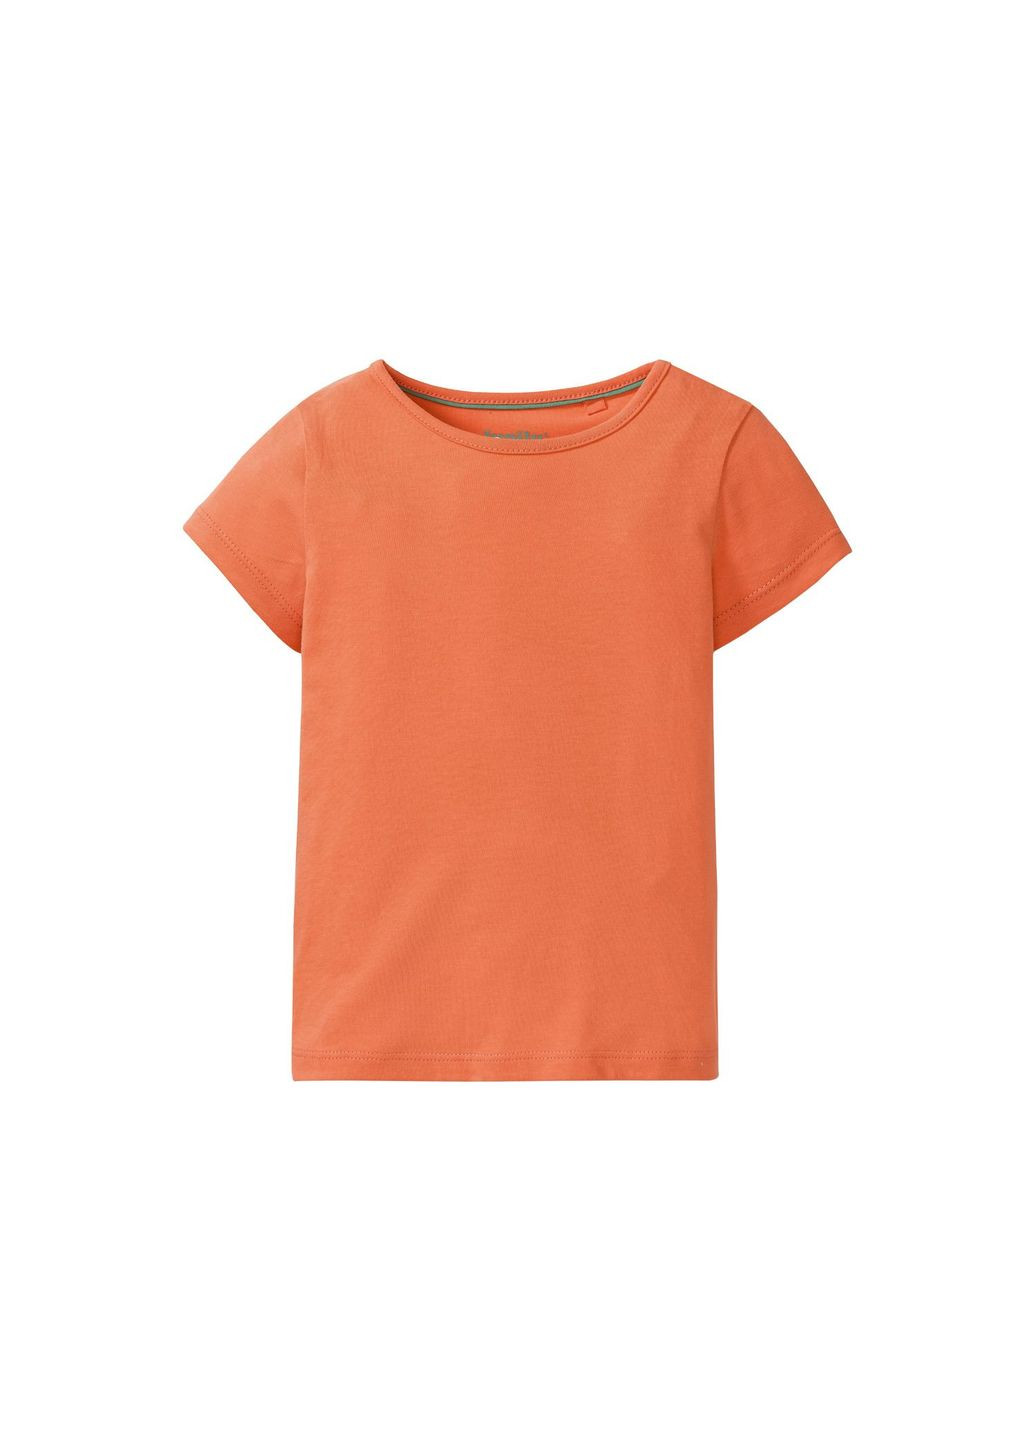 Оранжевая демисезонная футболка однотонная хлопковая для девочки 325954 Lupilu